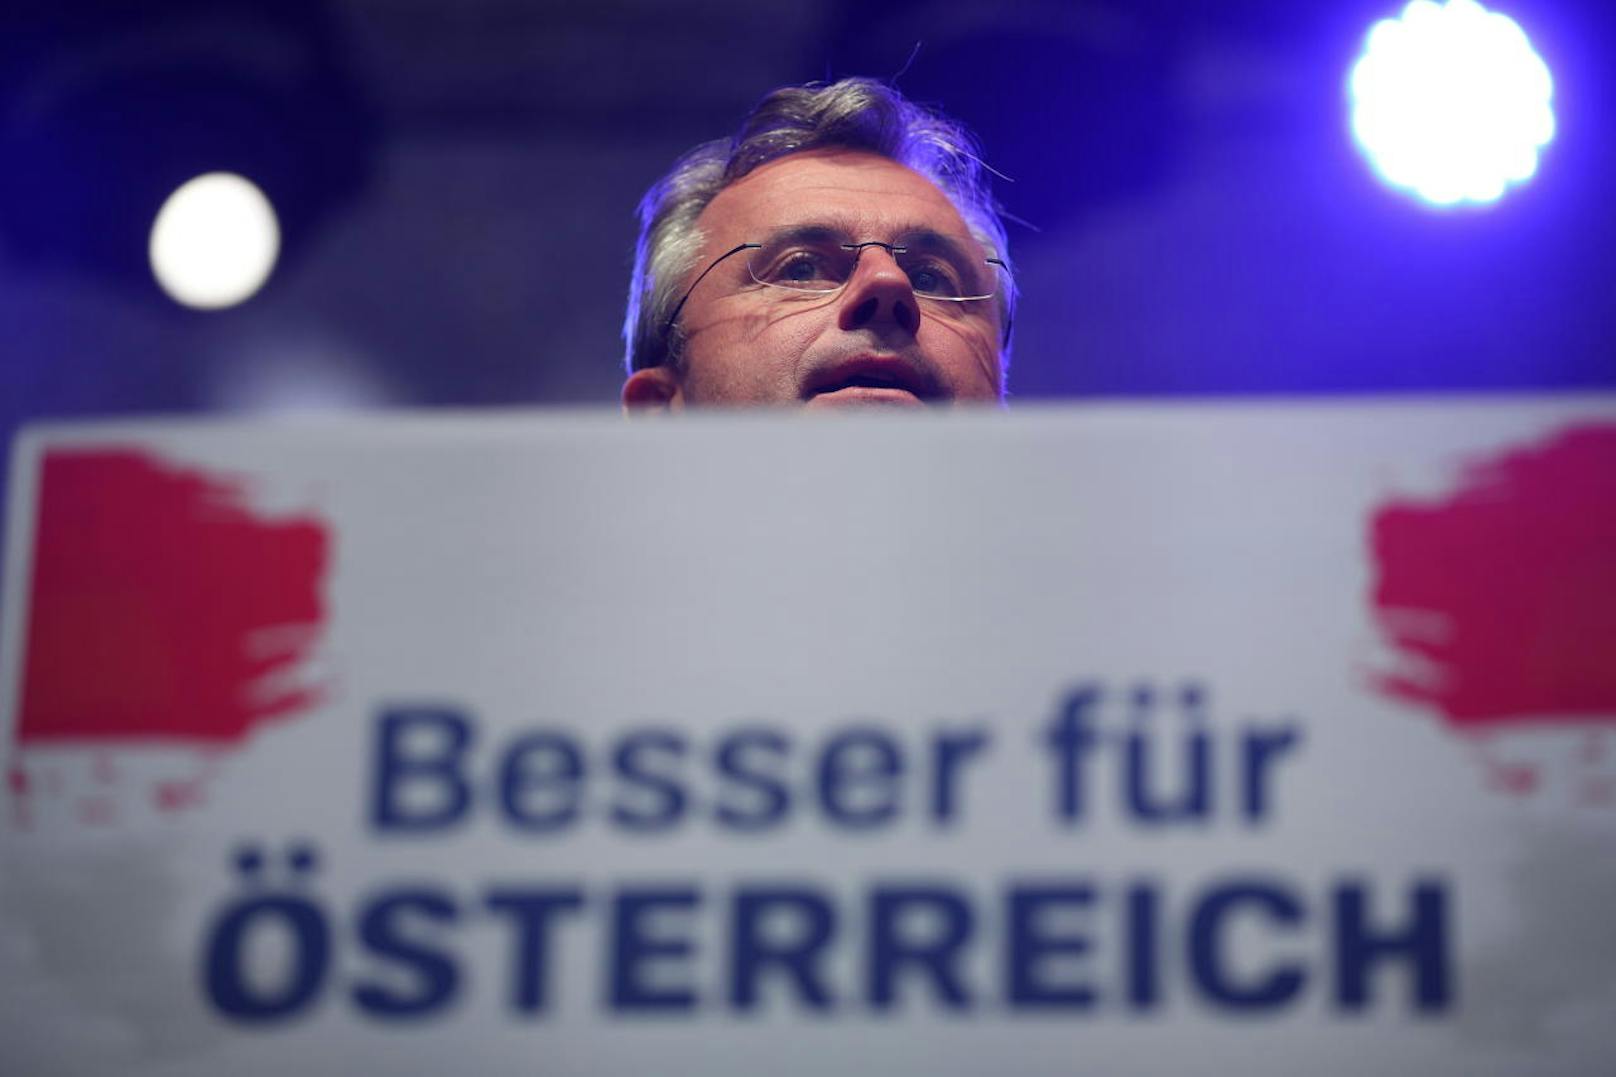 Am Viktor Adler-Markt ging der FPÖ-Wahlkampf zu Ende. Spitzenkandidat Norbert Hofer sagte gleich zu Beginn seiner Rede, dass er sich durch den Wahlkampf gekämpft habe.